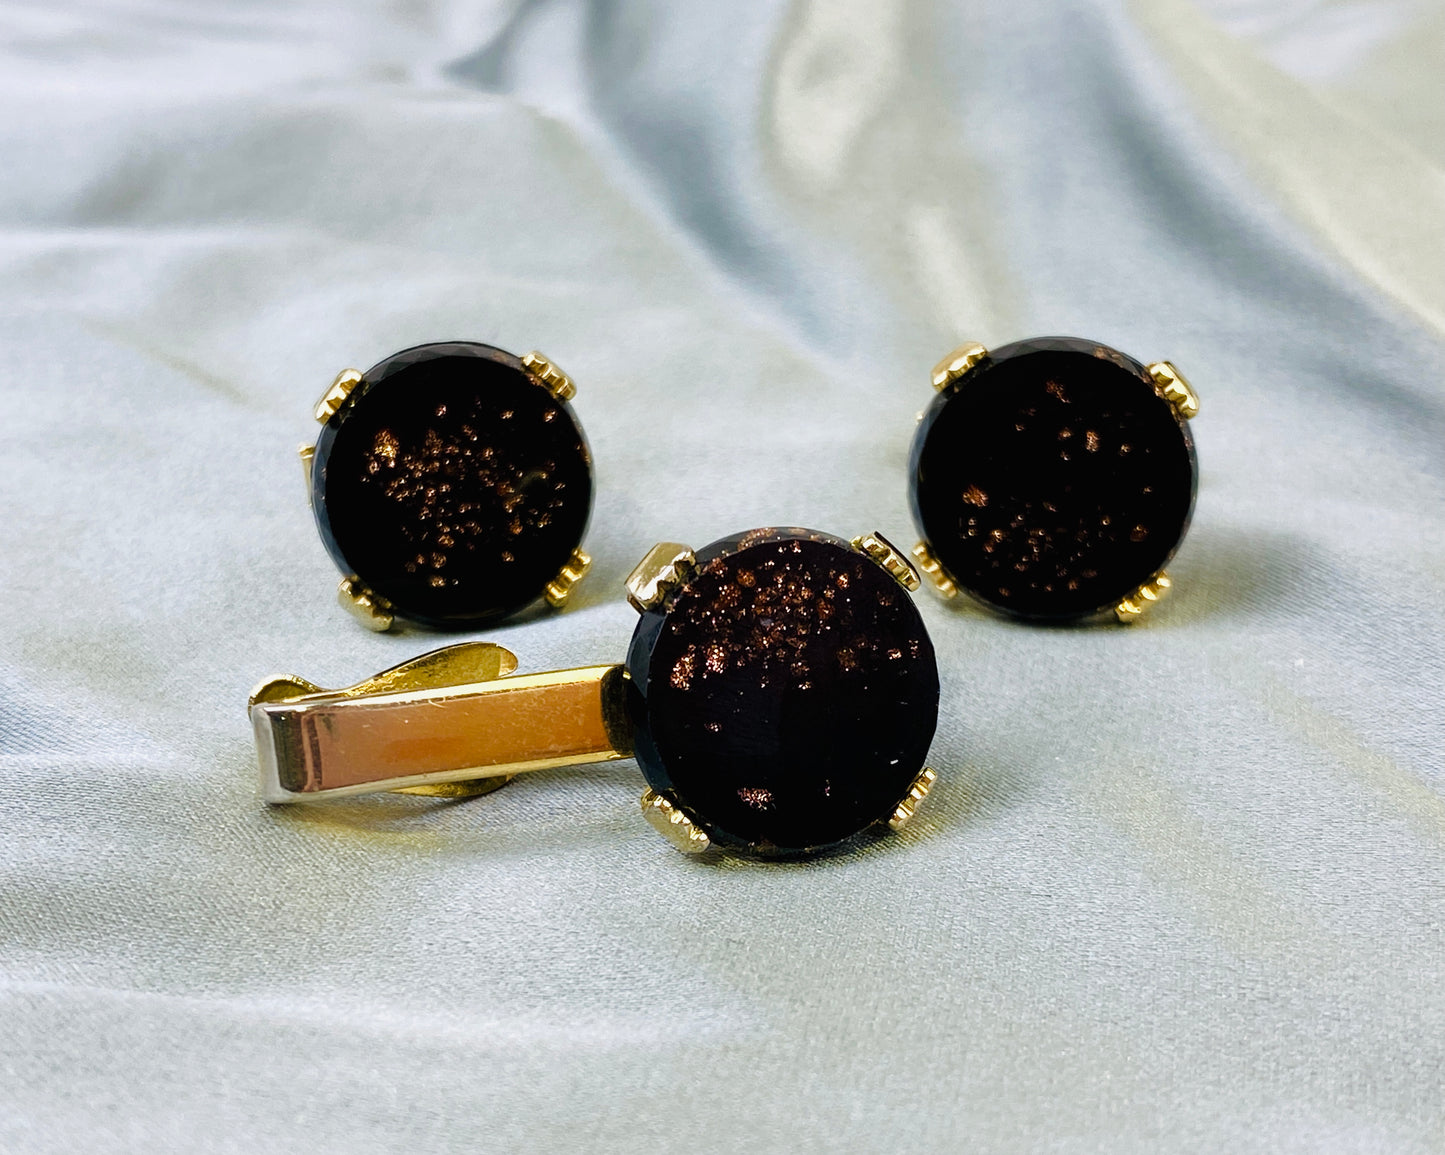 Vintage Round Cufflinks & Tie Bar Set, Black with Bronze Flecks